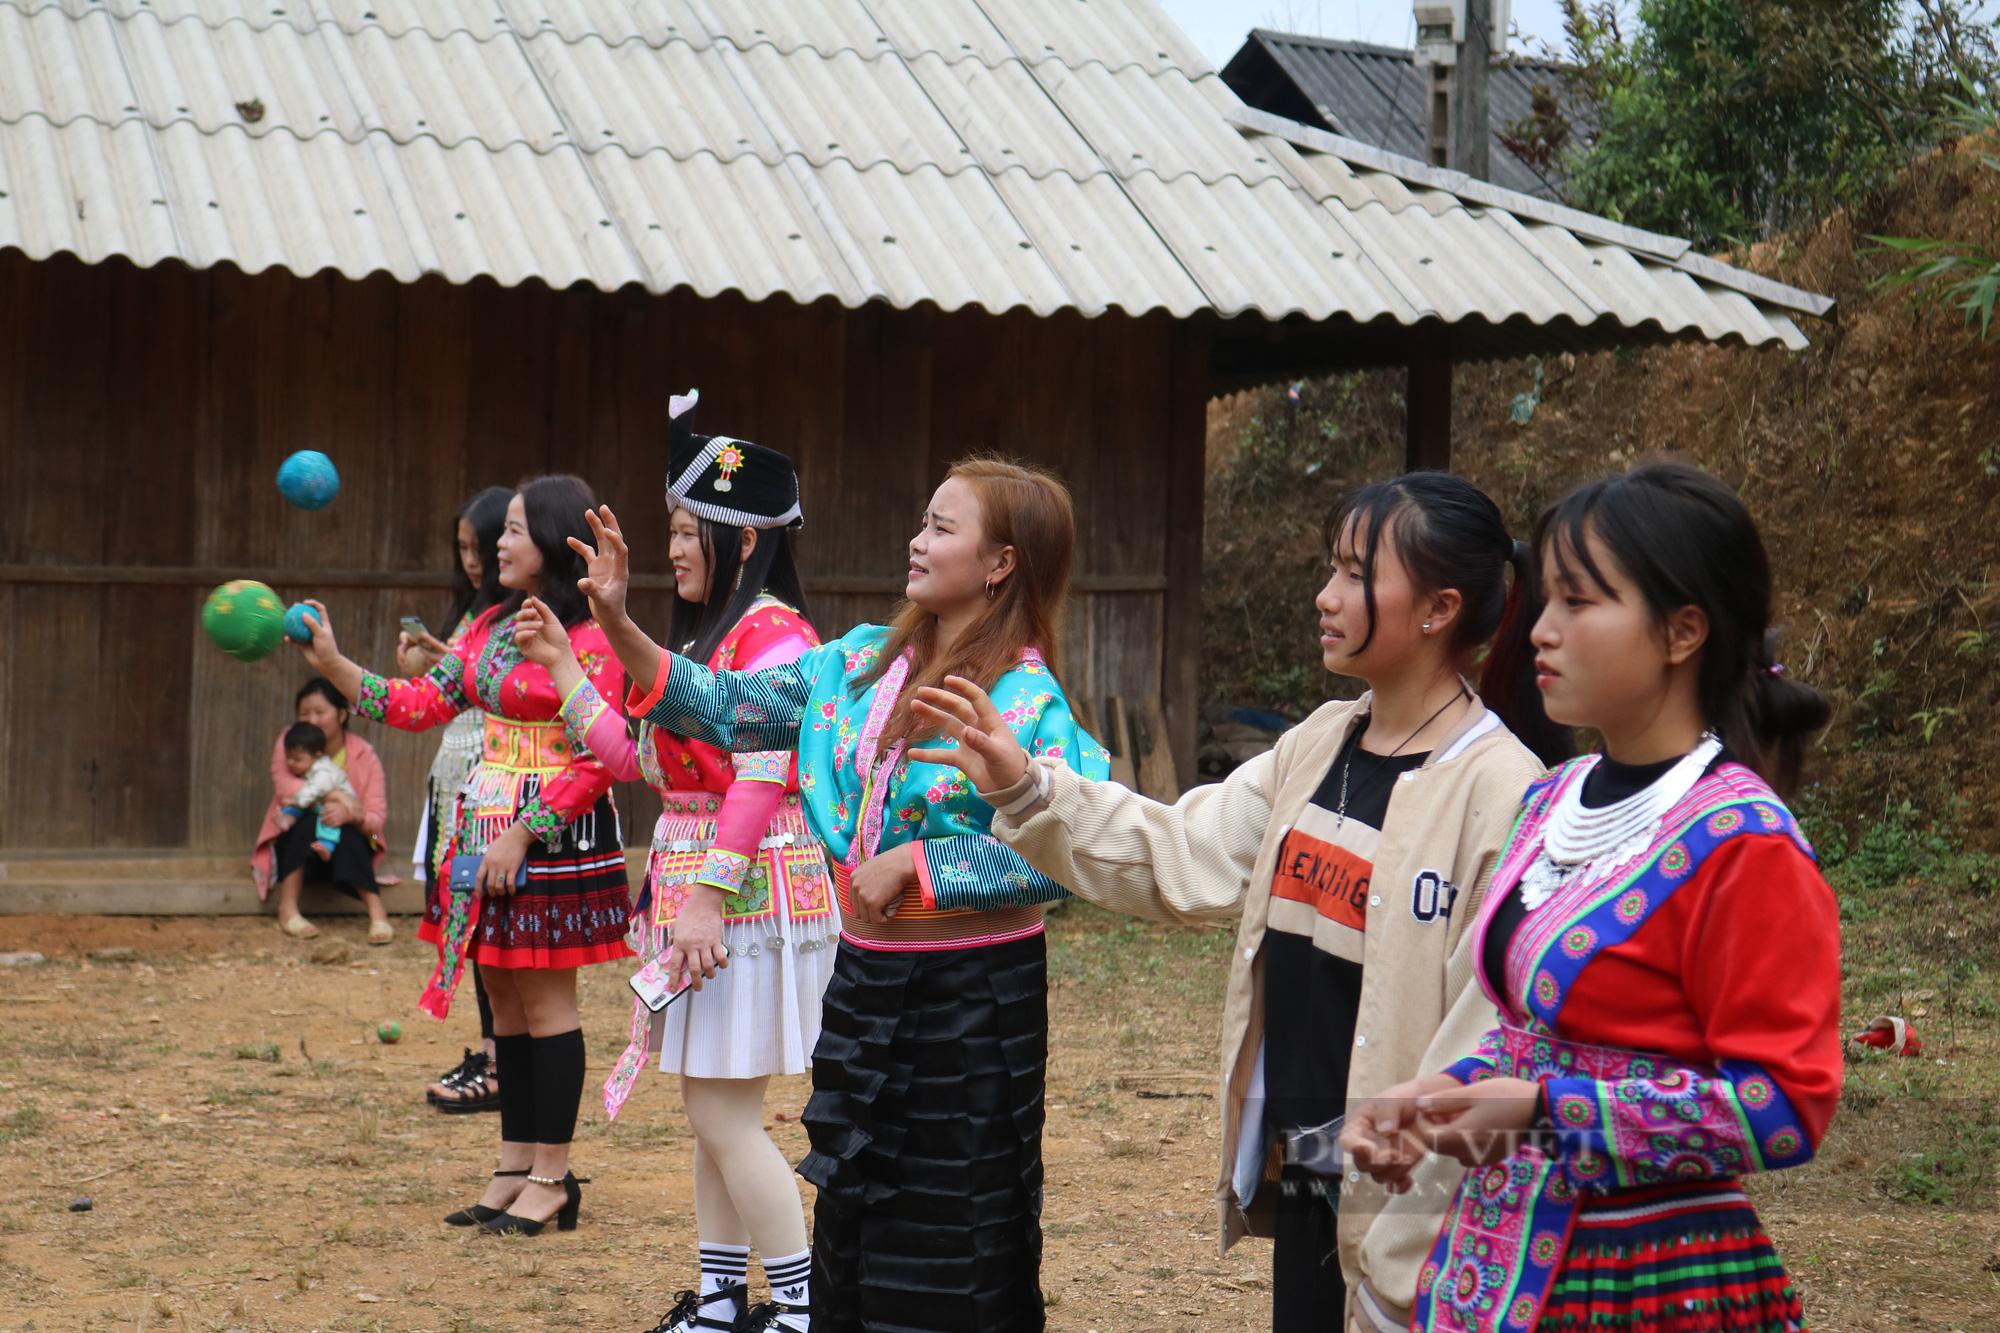 Sport traditionnel de la comunauté Hmong